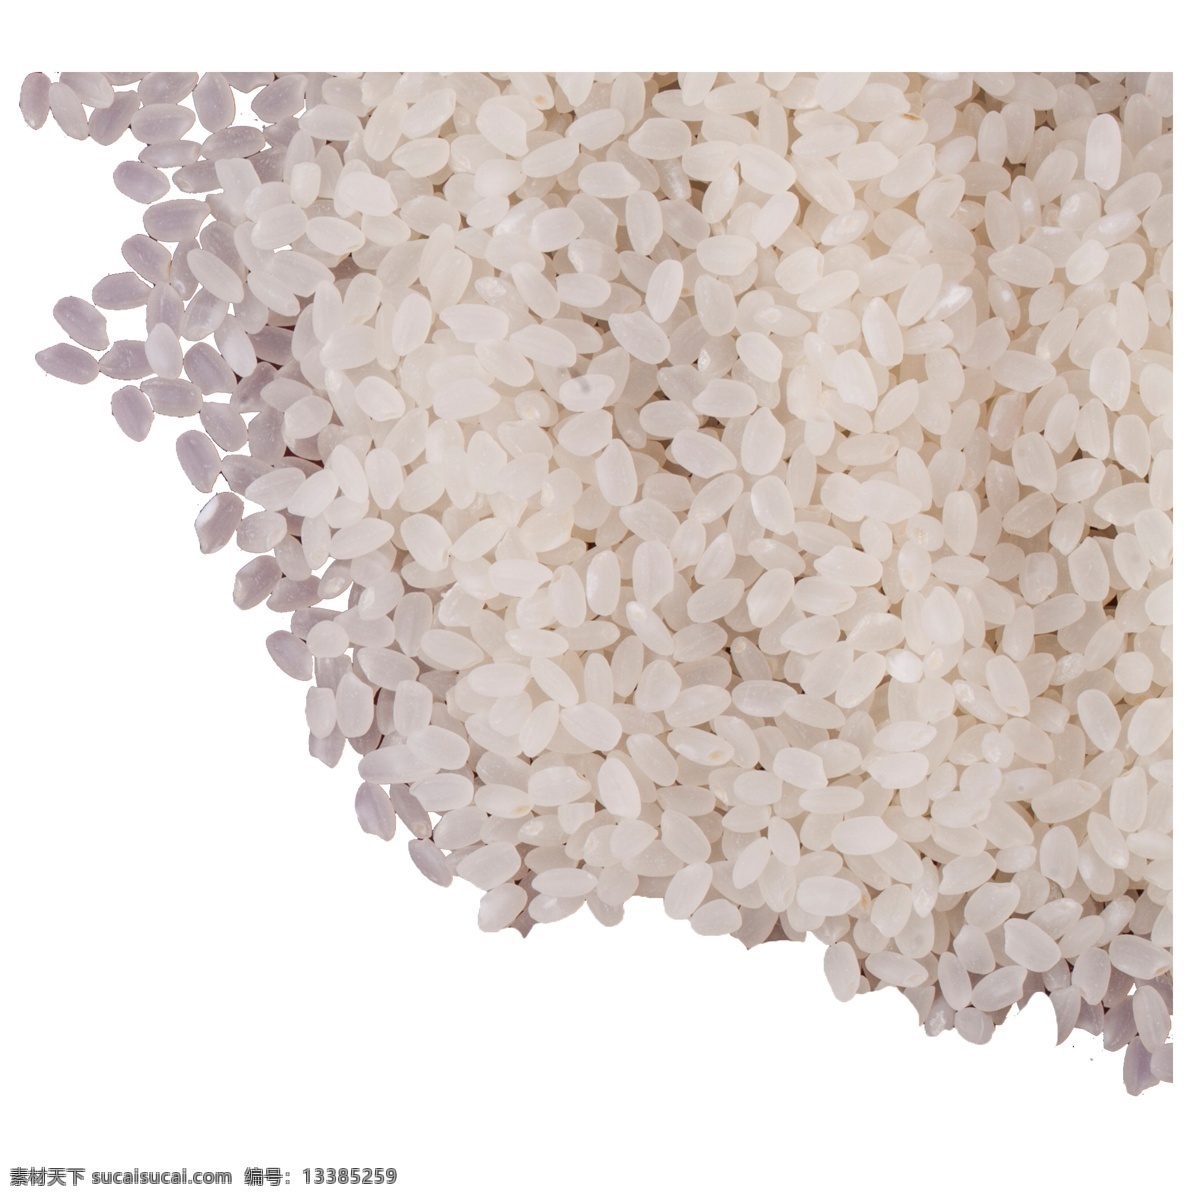 实拍 堆 五谷 粮食 大米 杂粮 食物 家用食物 大米粥 米 白色大米 实拍大米 实拍粮食大米 实拍一堆大米